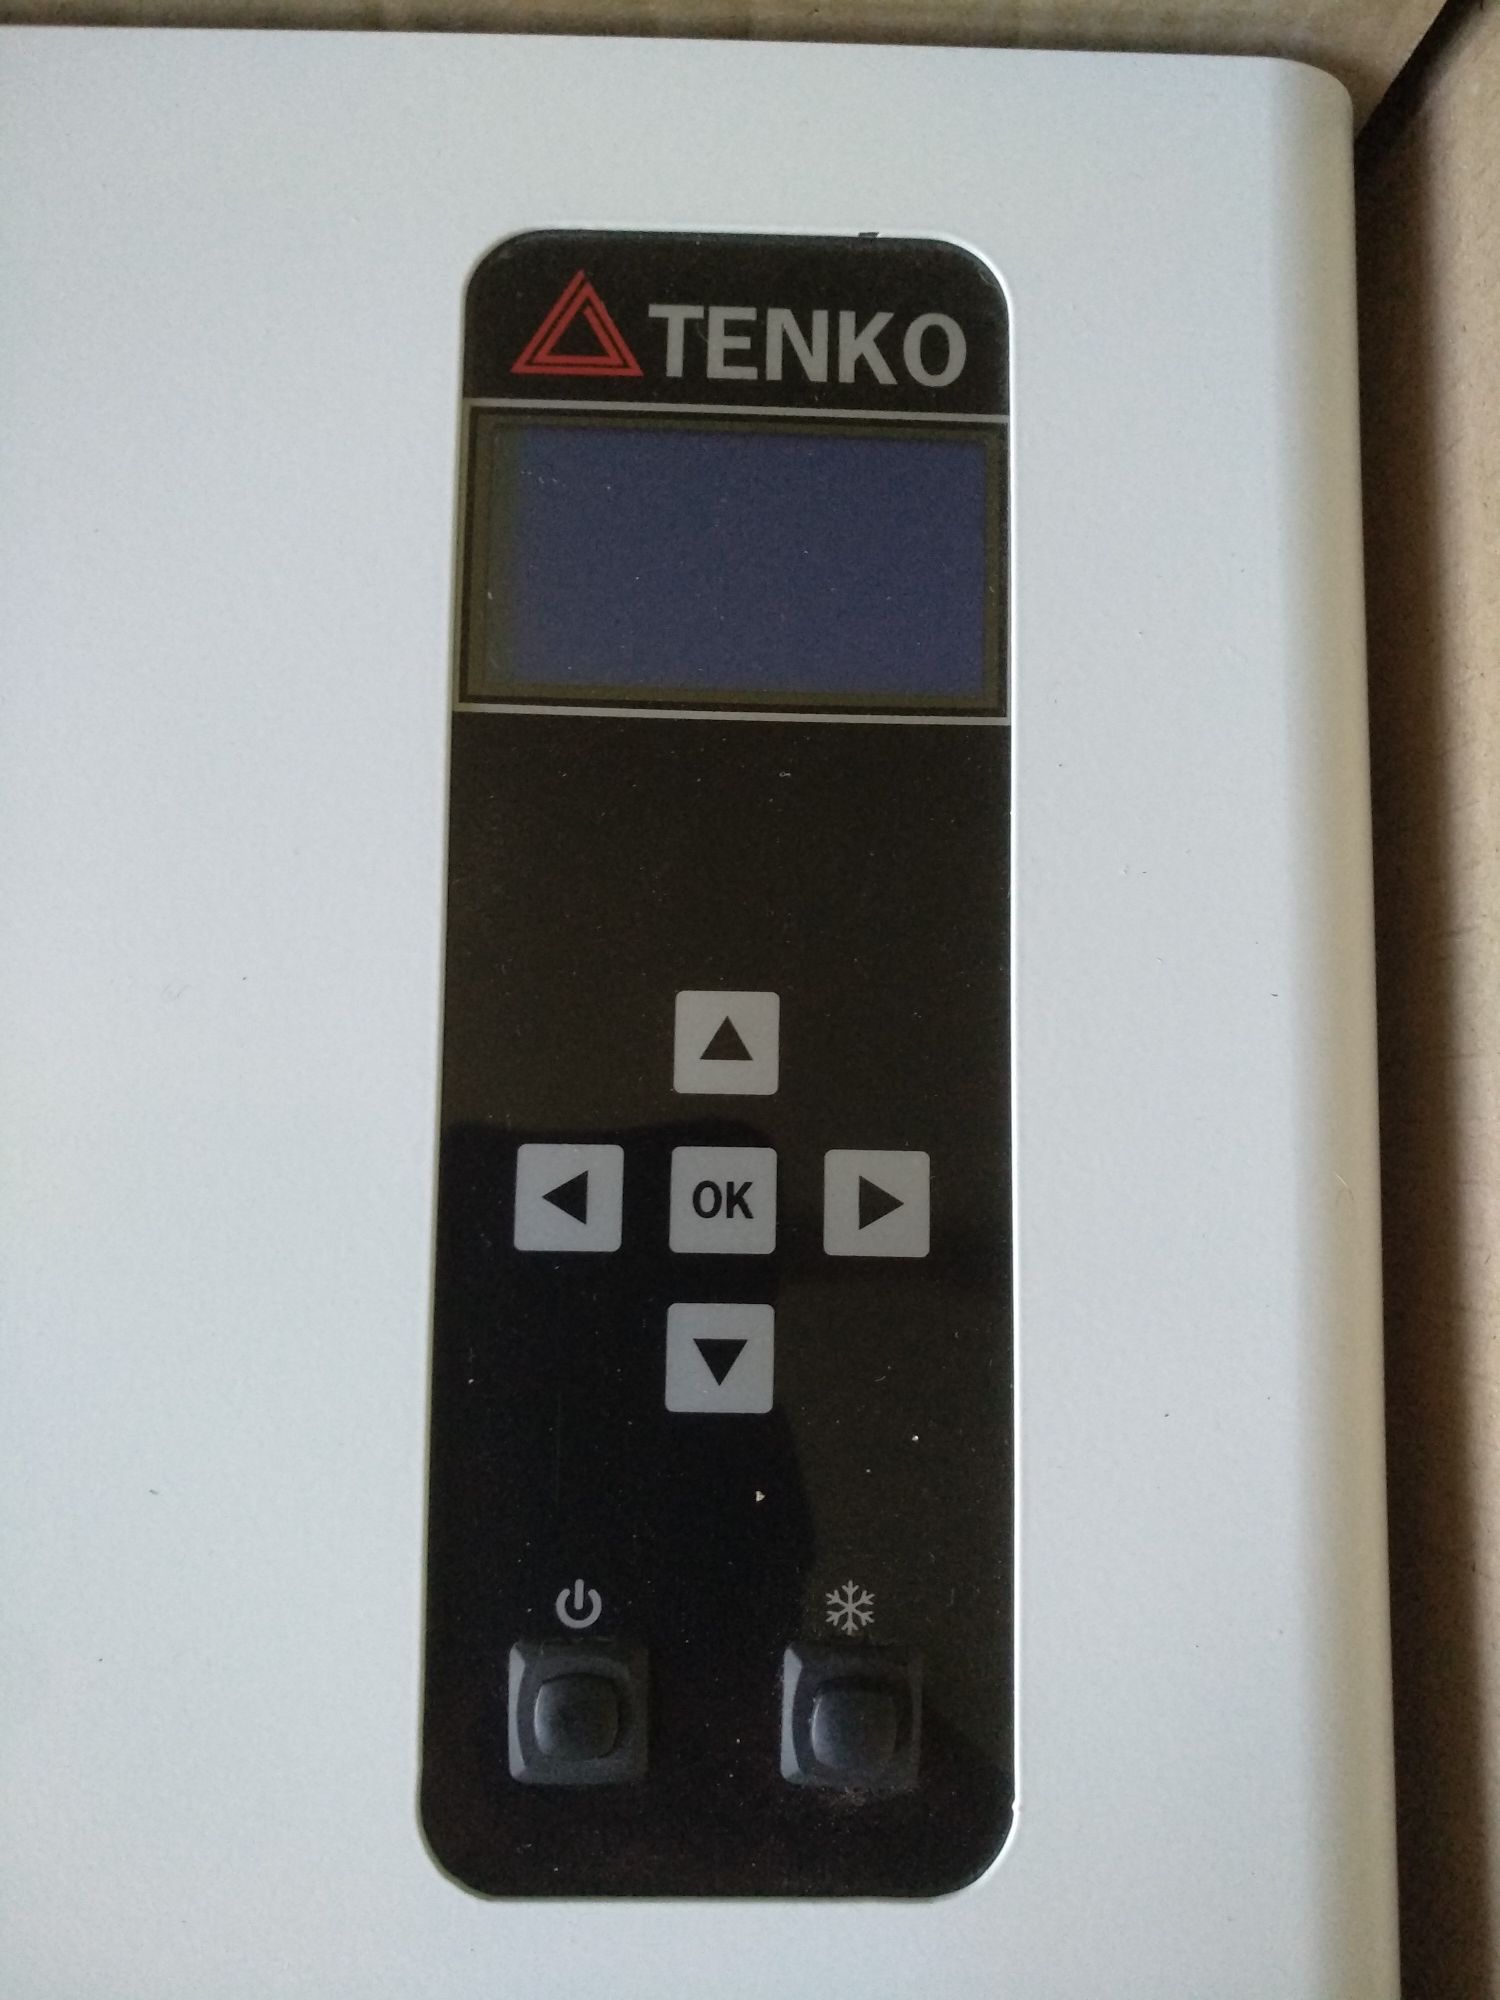 Електрокотел Tenko Premium 15 кВт 380 В в упаковці. На гарантії.